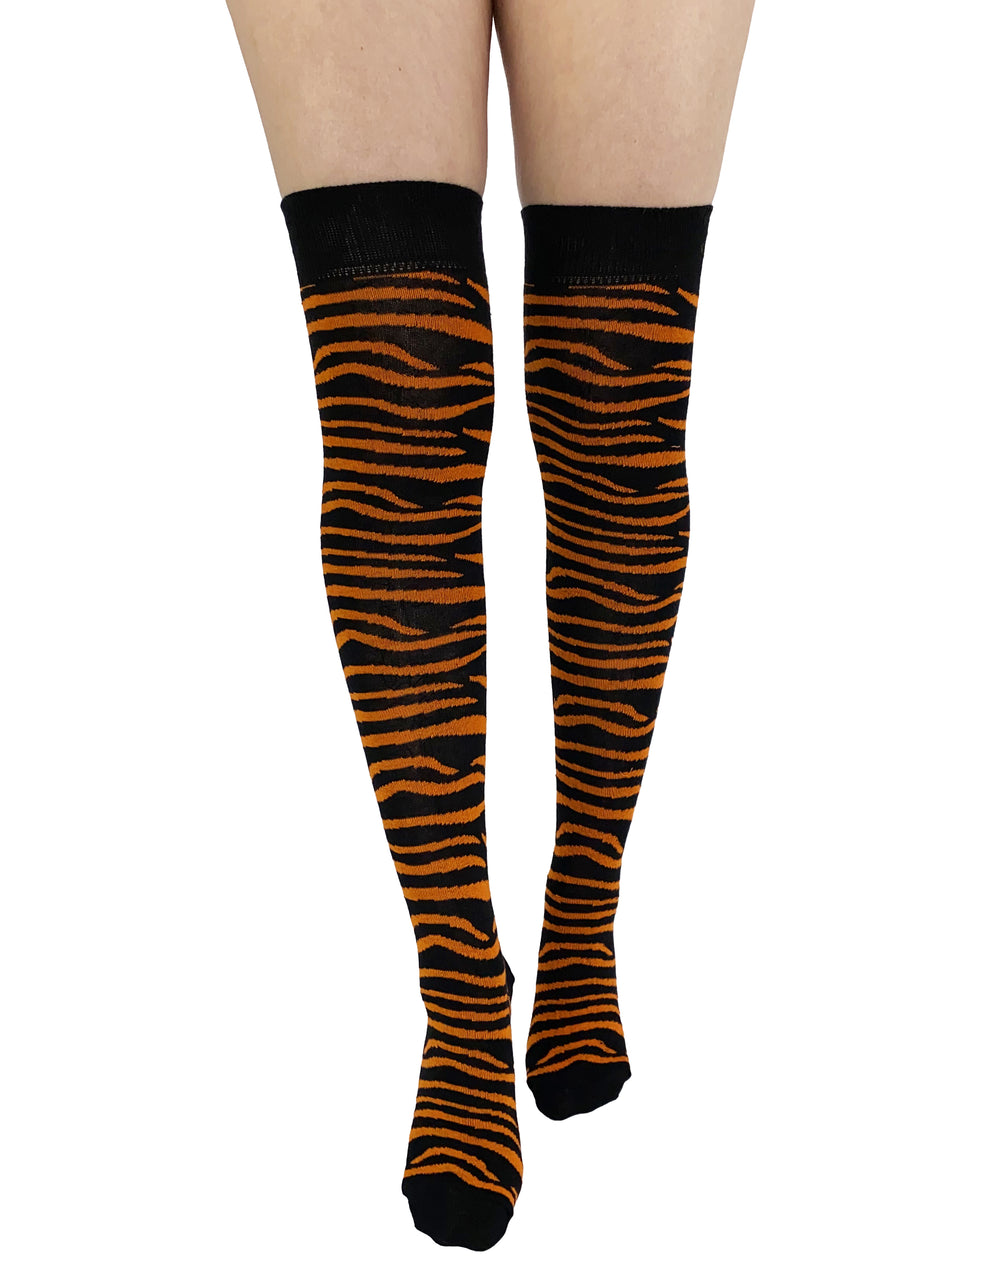 Pamela Mann OTK Socks | Zebra Orange/Black